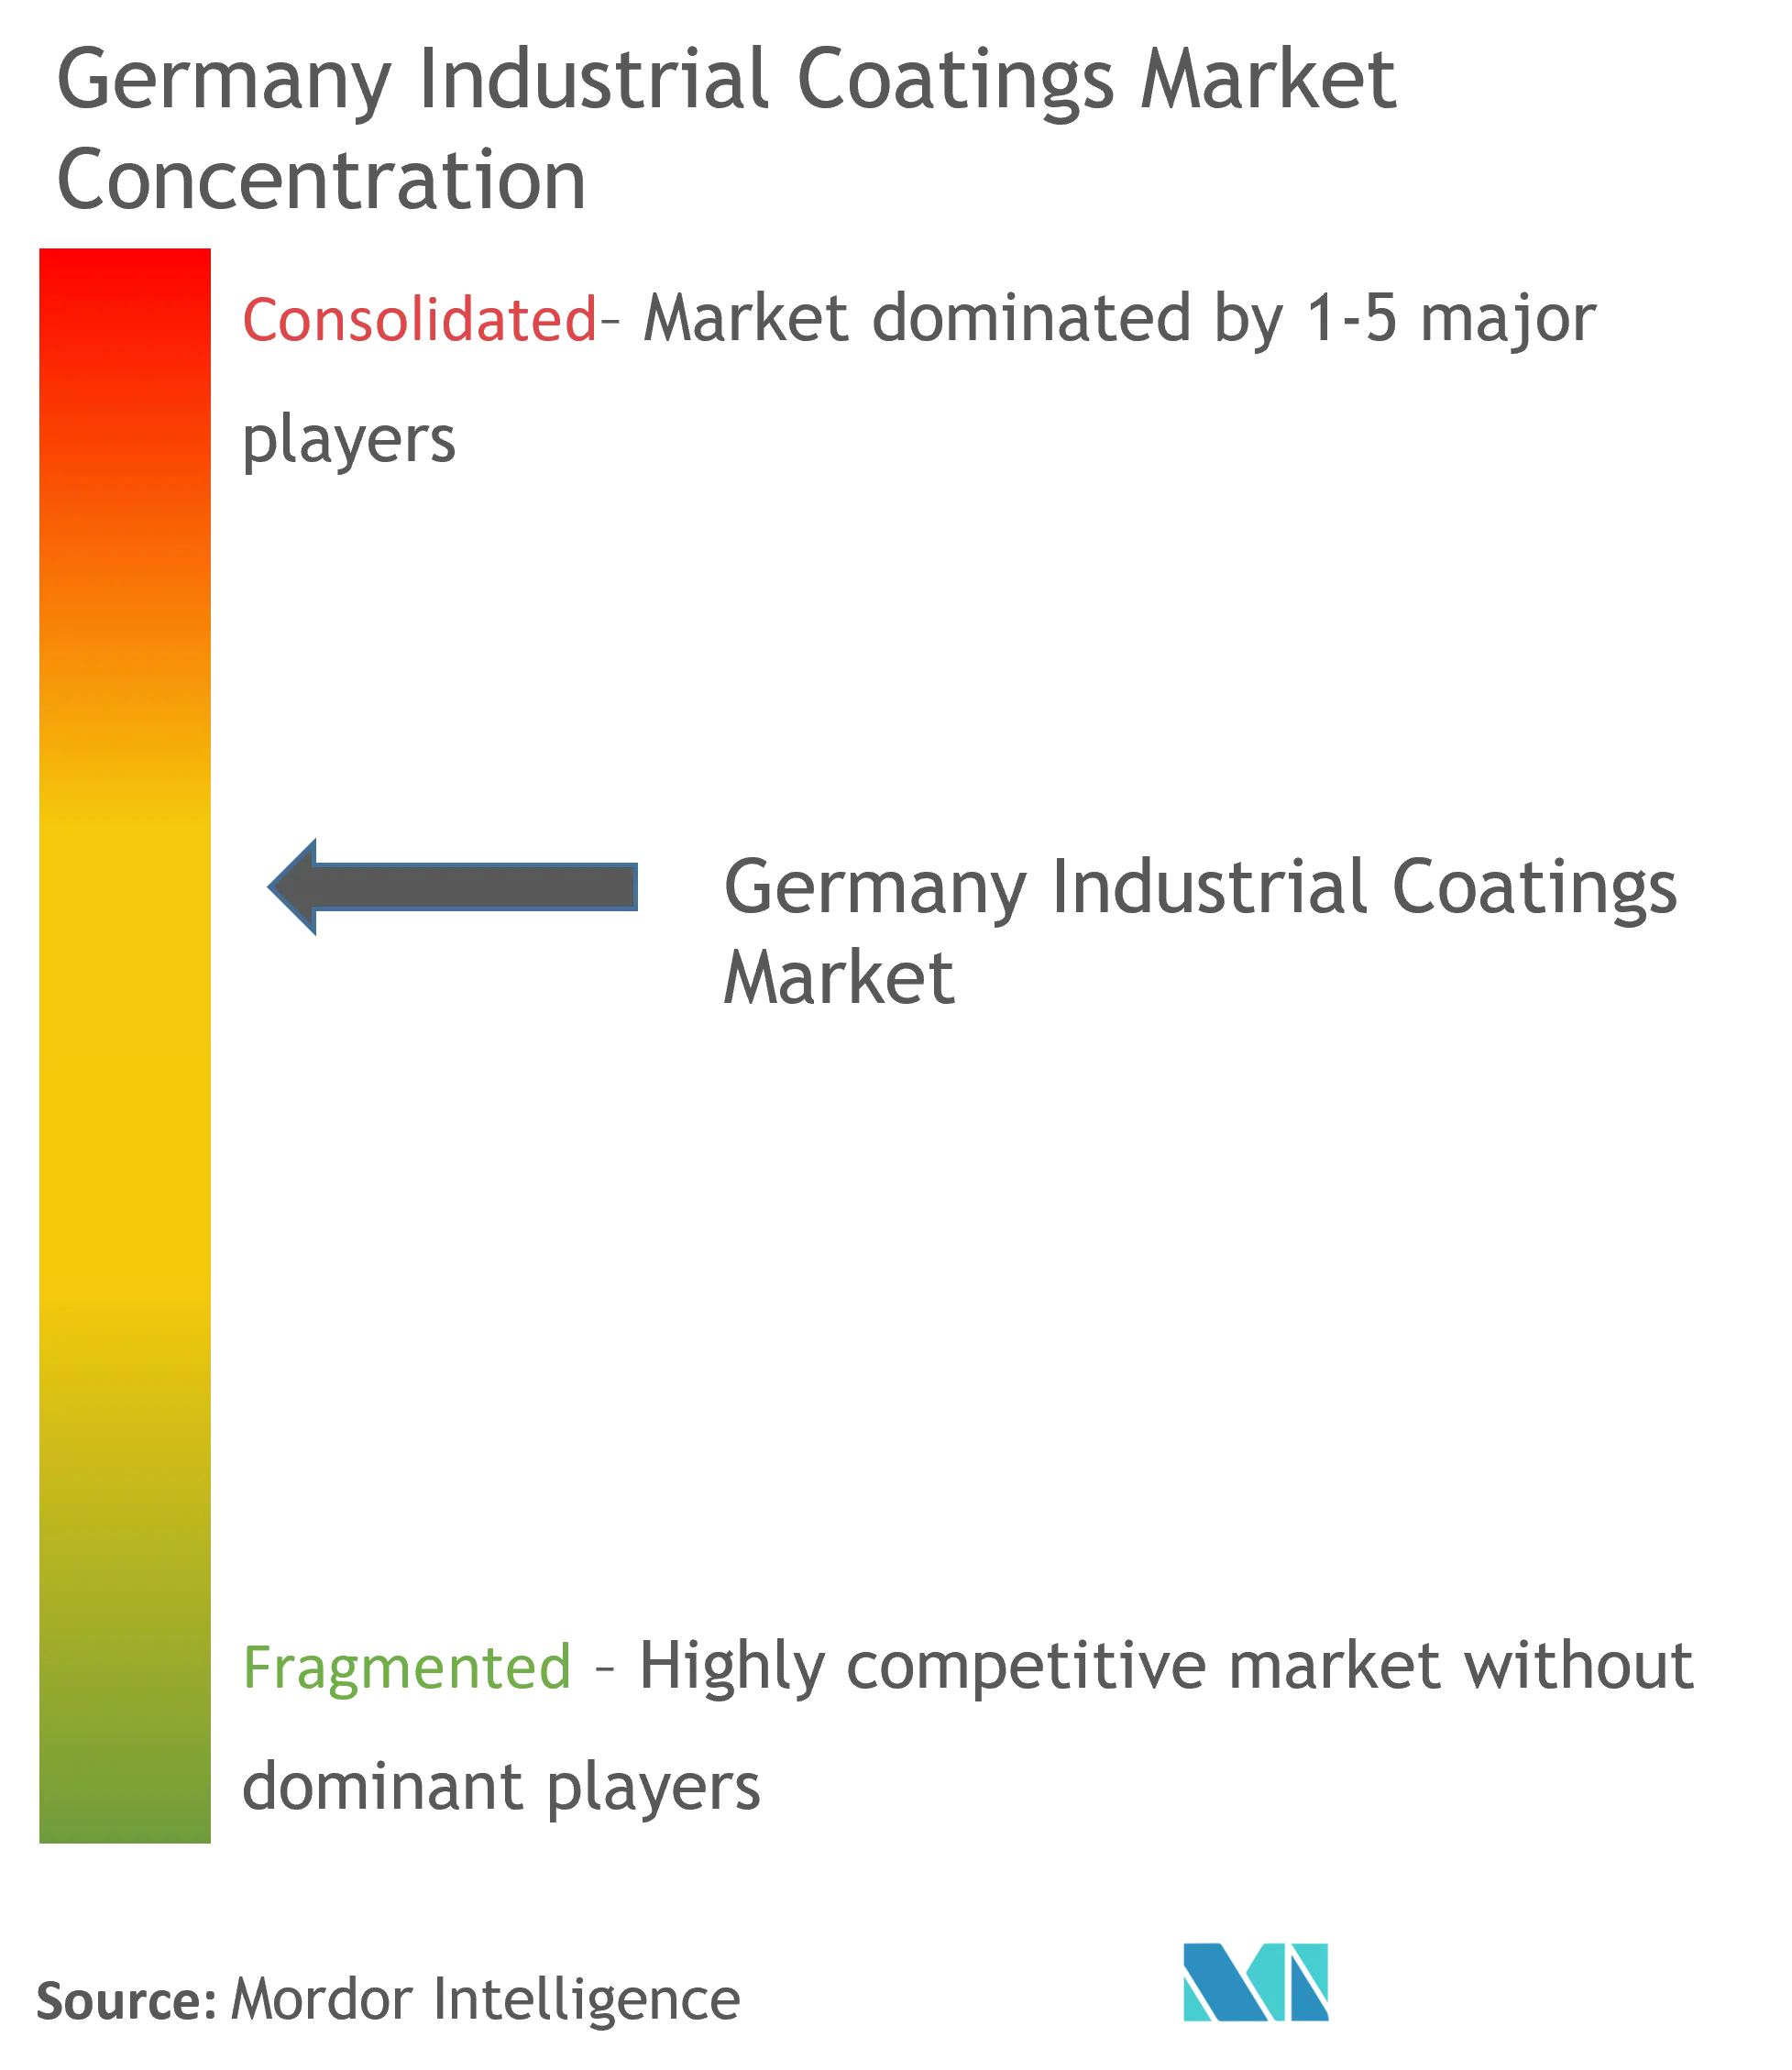 德国工业涂料市场集中度